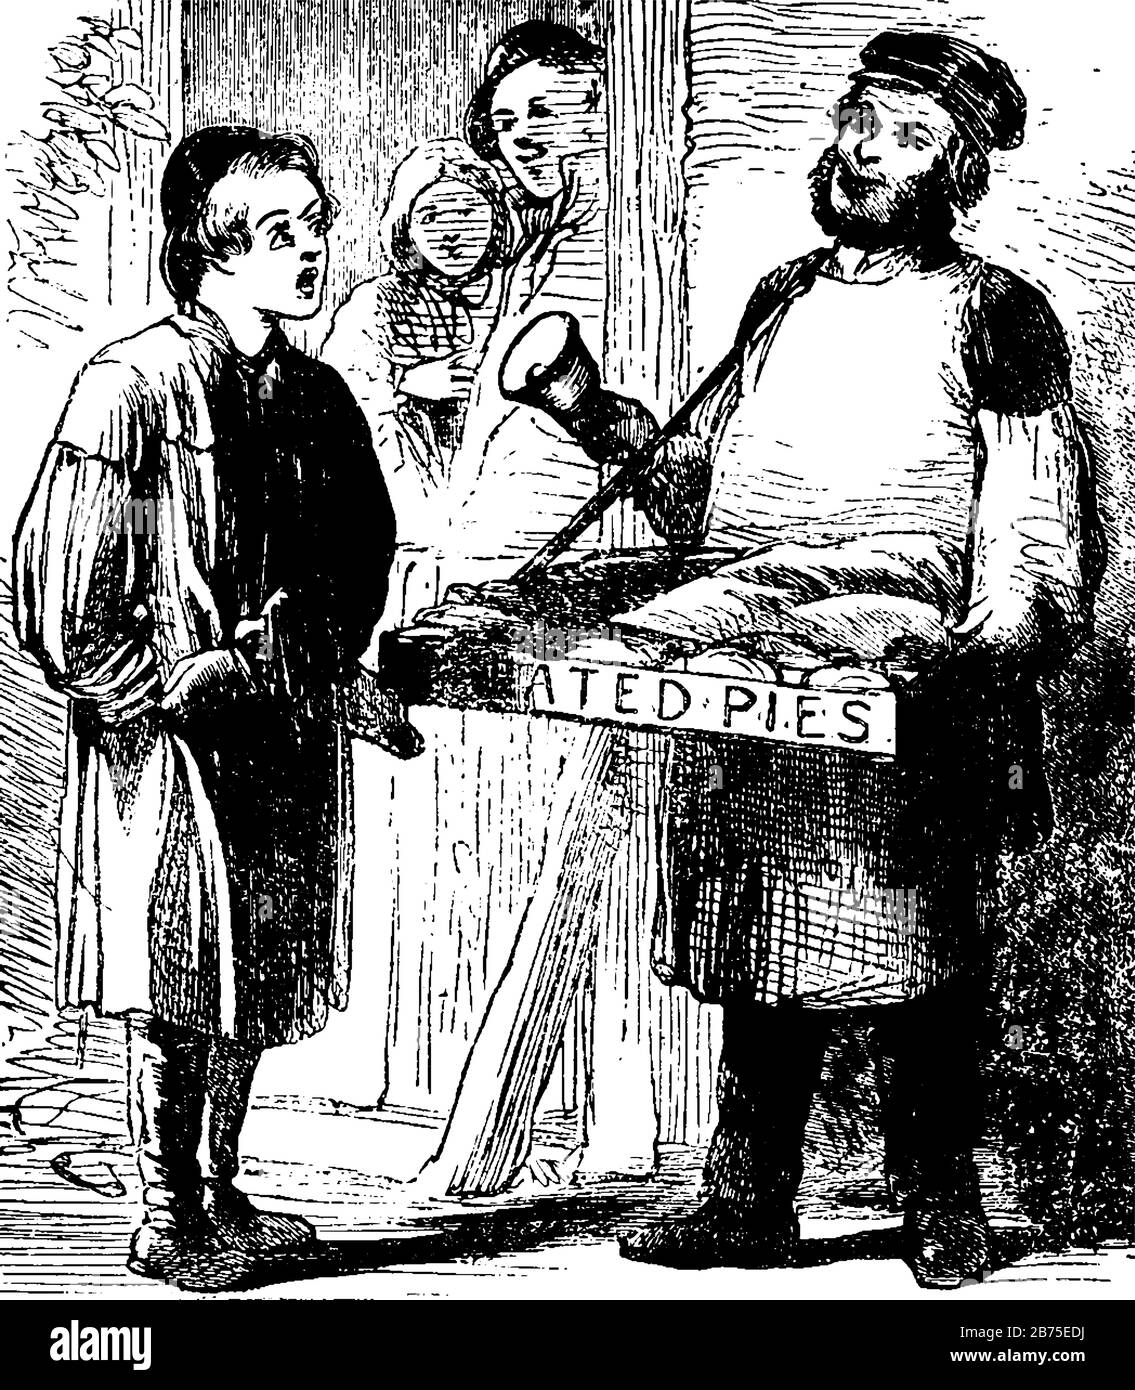 Un Pie-man avec cloche en main vendant des tarte et jeune garçon lui demandant quelque chose, Pie-man tenant des plateaux de tartes, dessin vintage de ligne ou gravure illustr Illustration de Vecteur